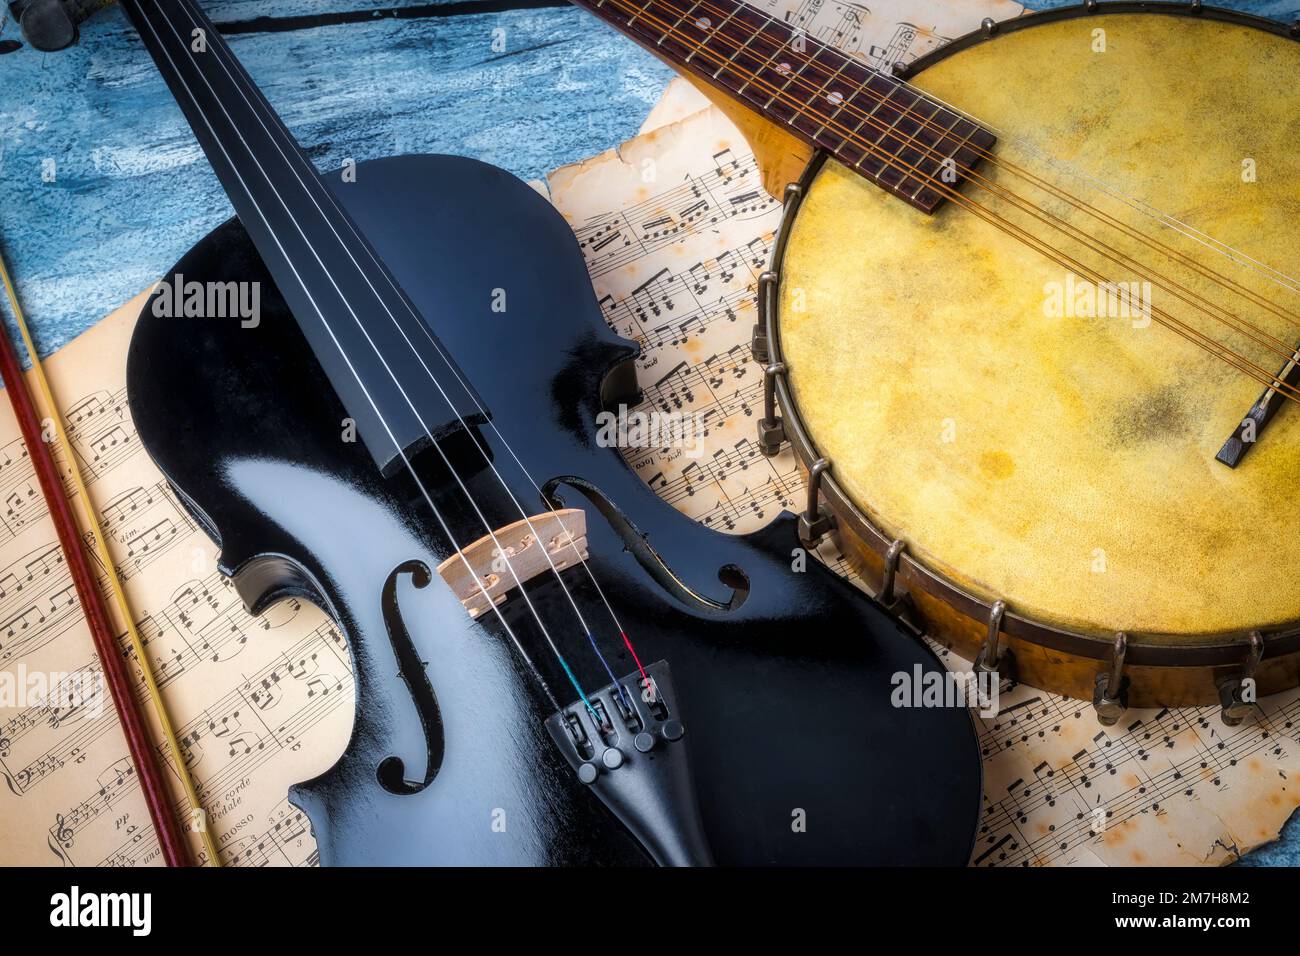 Black Violin And Banjo Stock Photo